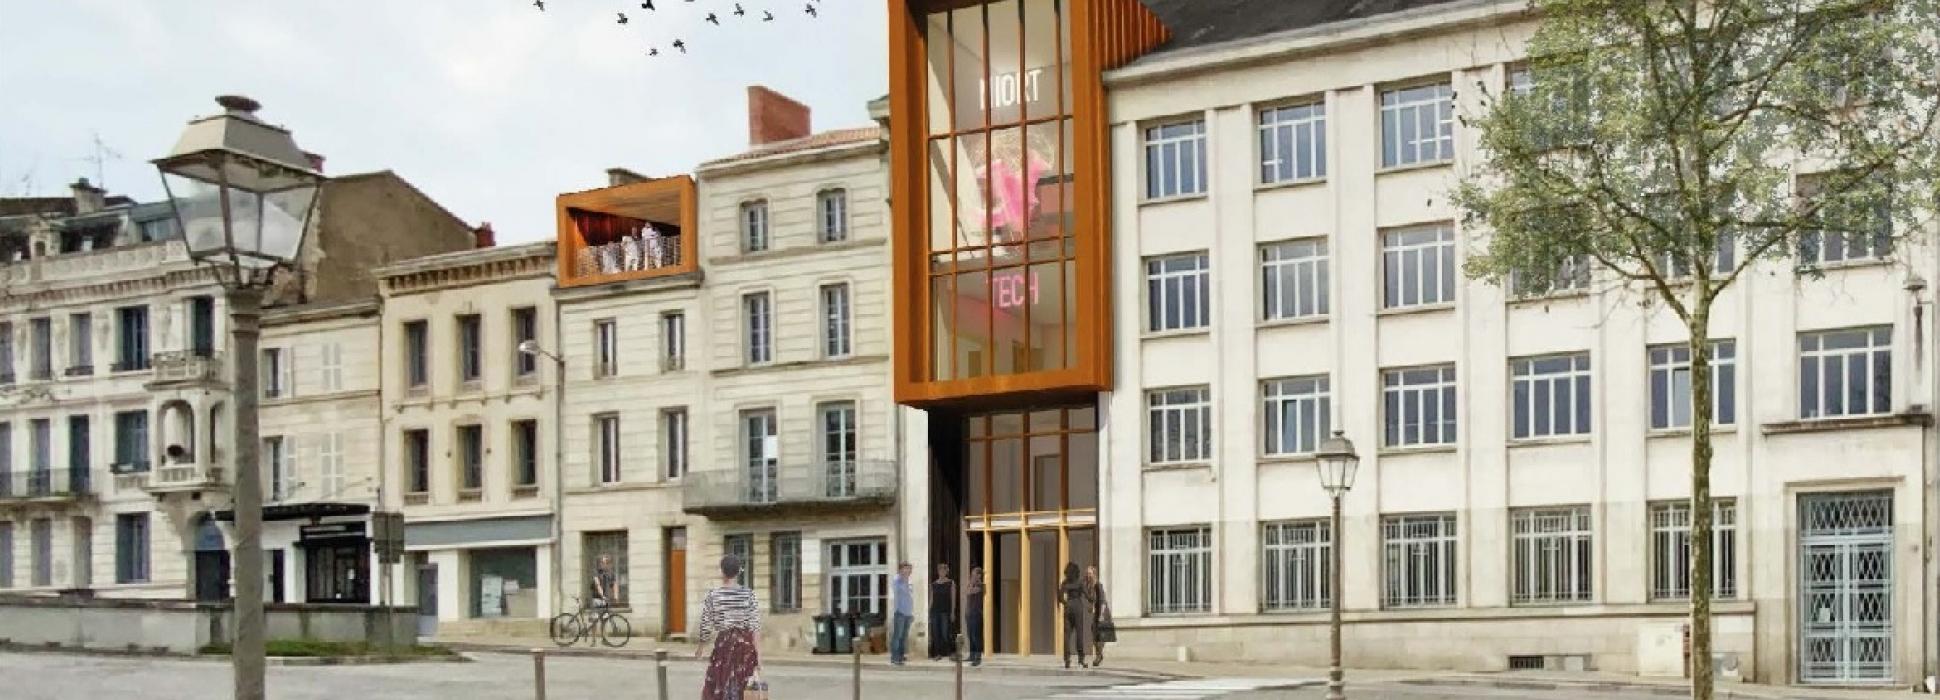 Niort Tech lance ses travaux d’agrandissement dans les Deux-Sèvres